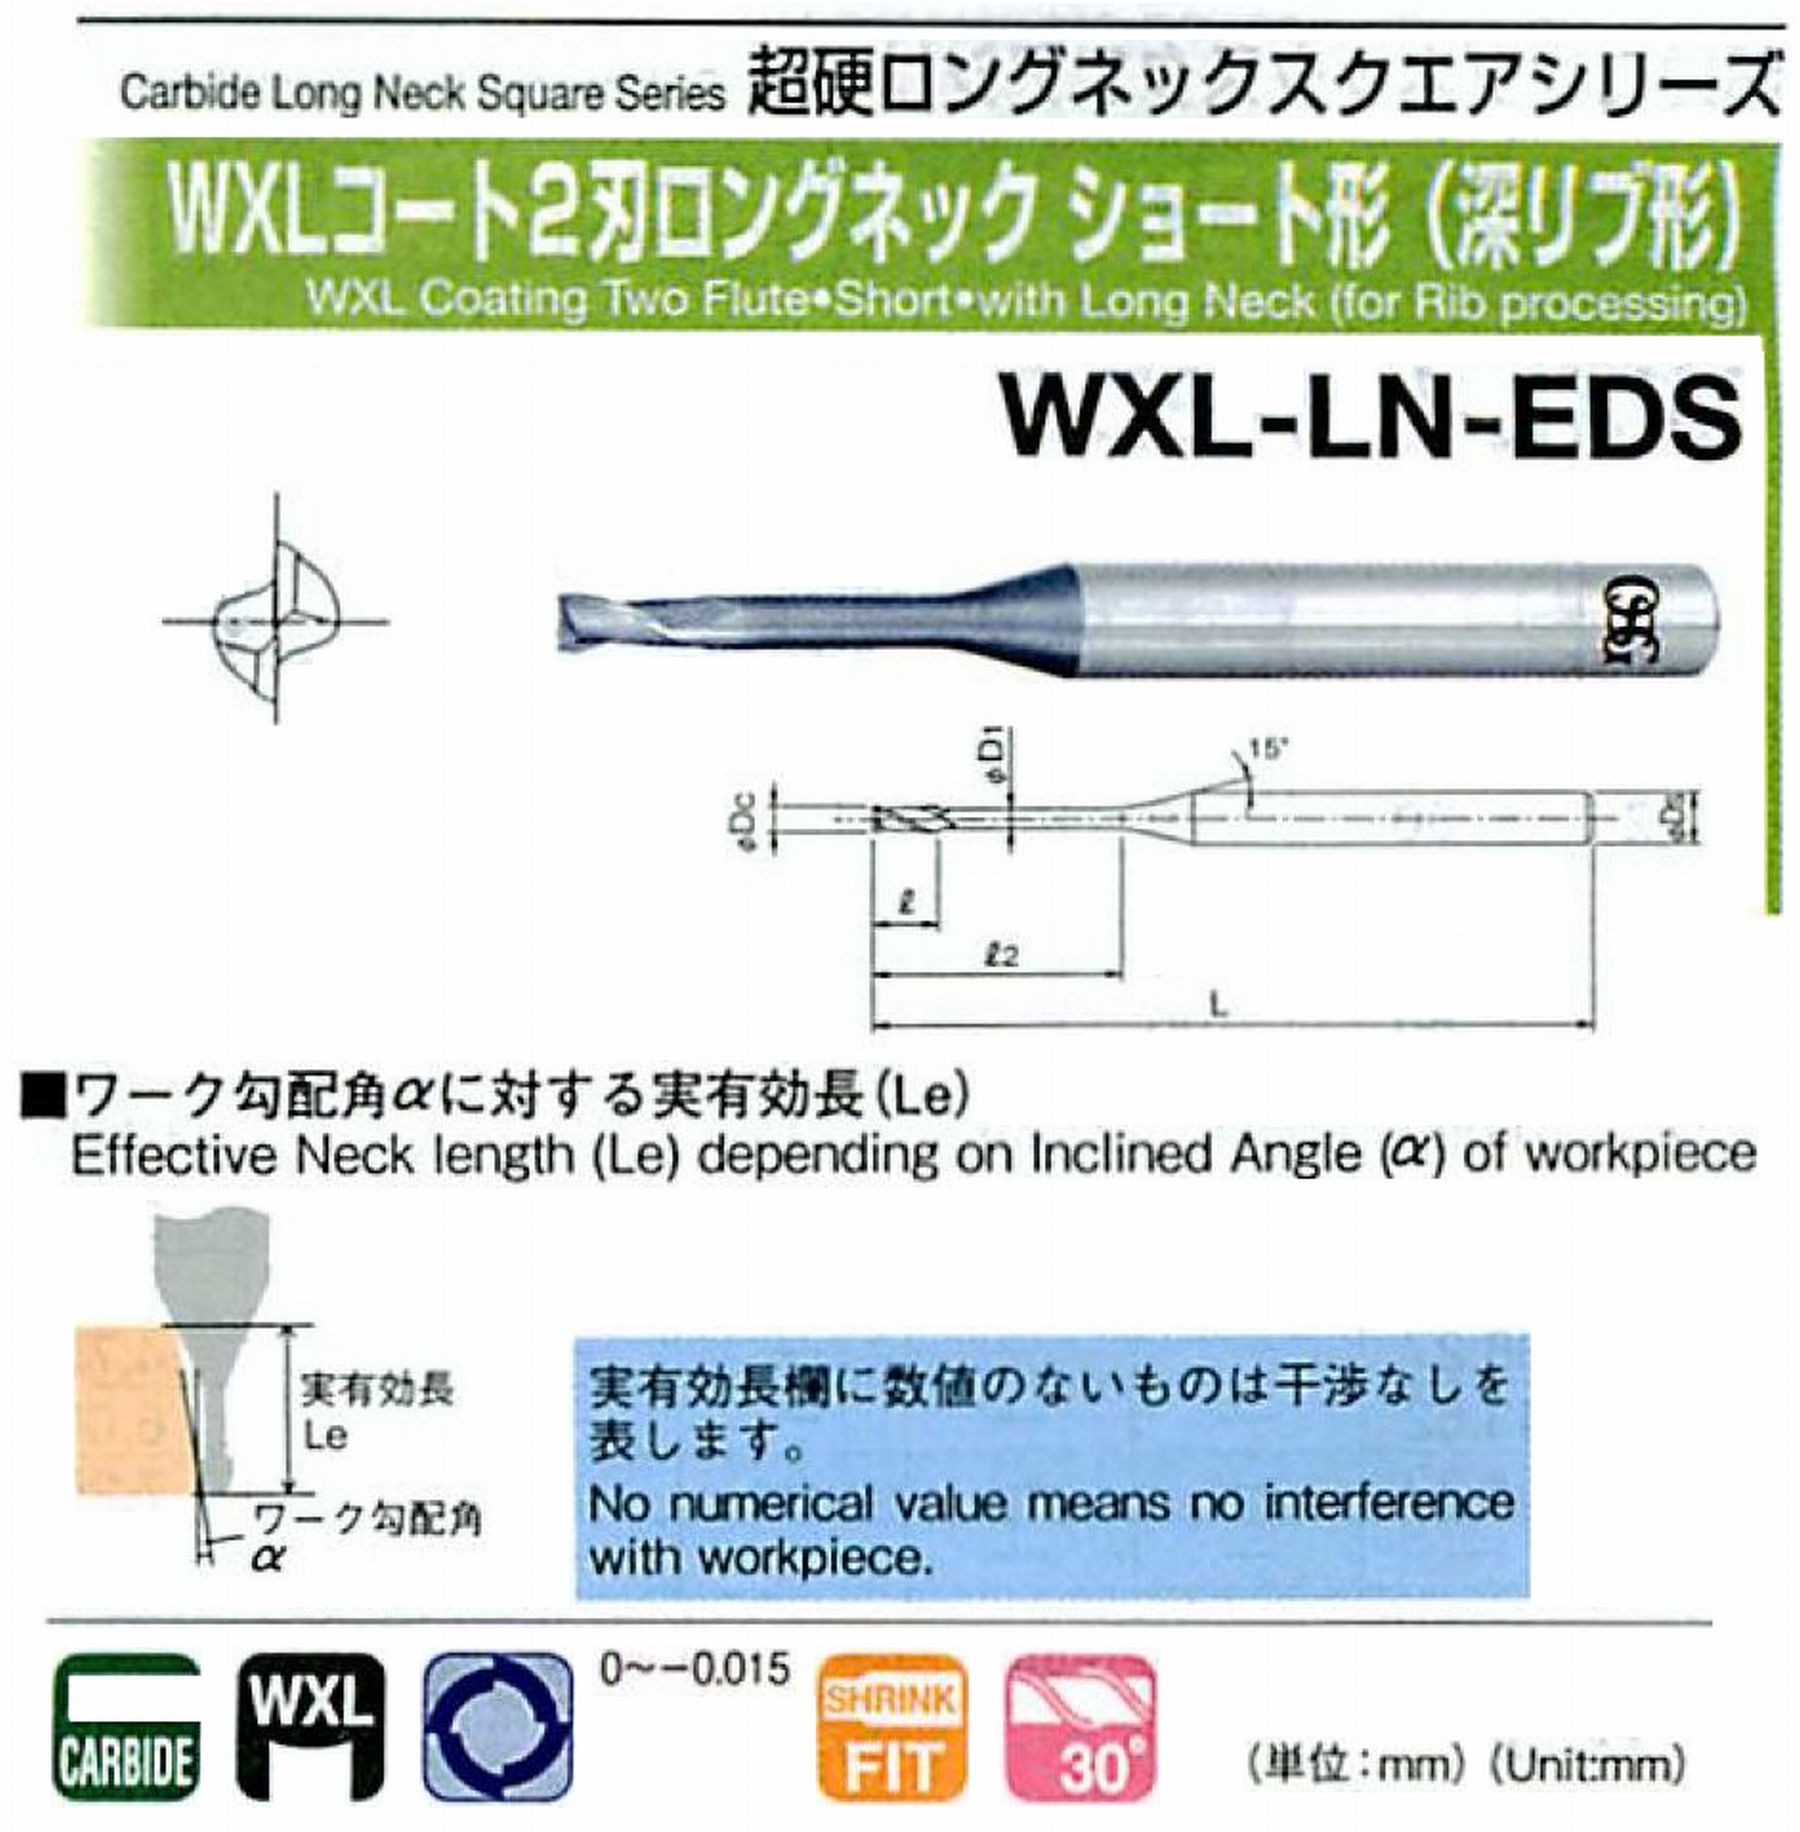 オーエスジー/OSG WXLコート2刃 ロングネックショート形(深リブ形) WXL-LN-EDS 外径×首下長1×3 全長45 刃長1.5 シャンク径4mm 首径0.95